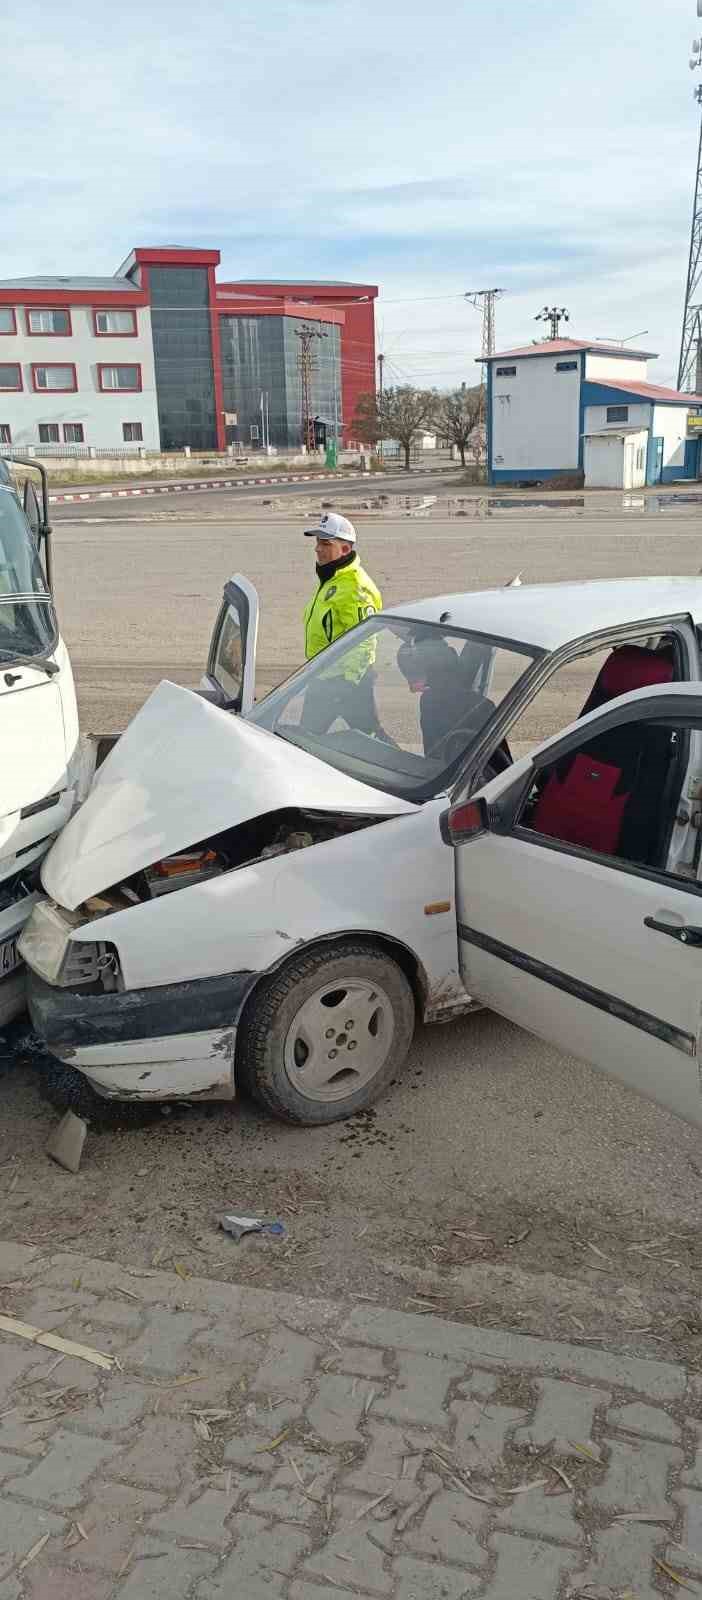 Erciş’te zincirleme trafik kazası: 2 yaralı